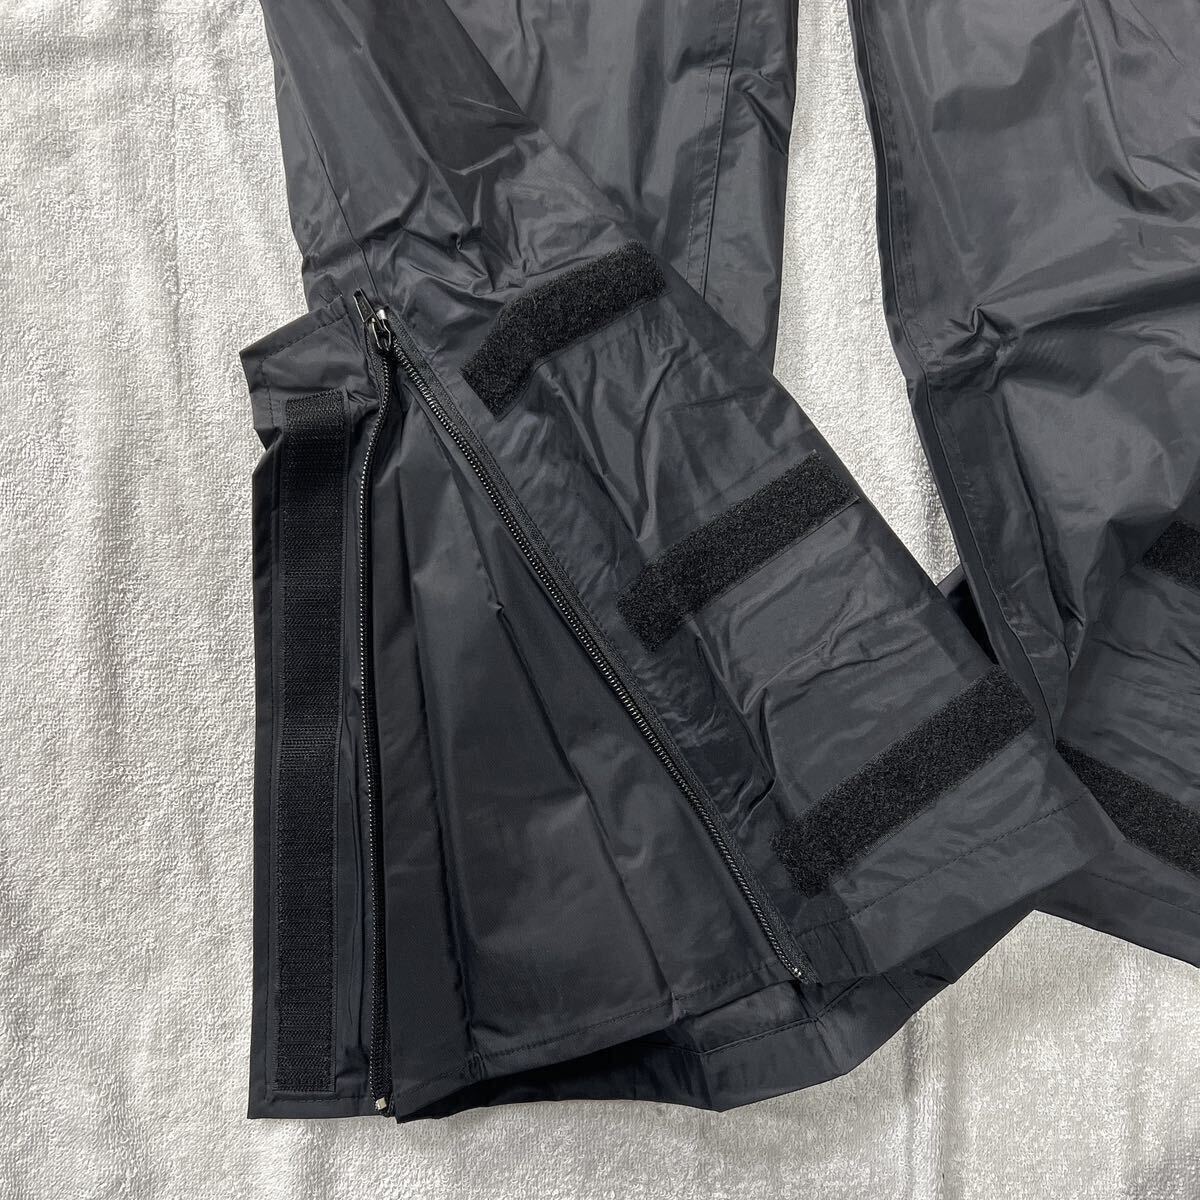 S.K.Y レインパンツ PVCコーティング BLACK 3Lサイズ ライディングパンツ パンツ 雨具 撥水 カッパ A60513-24_画像4